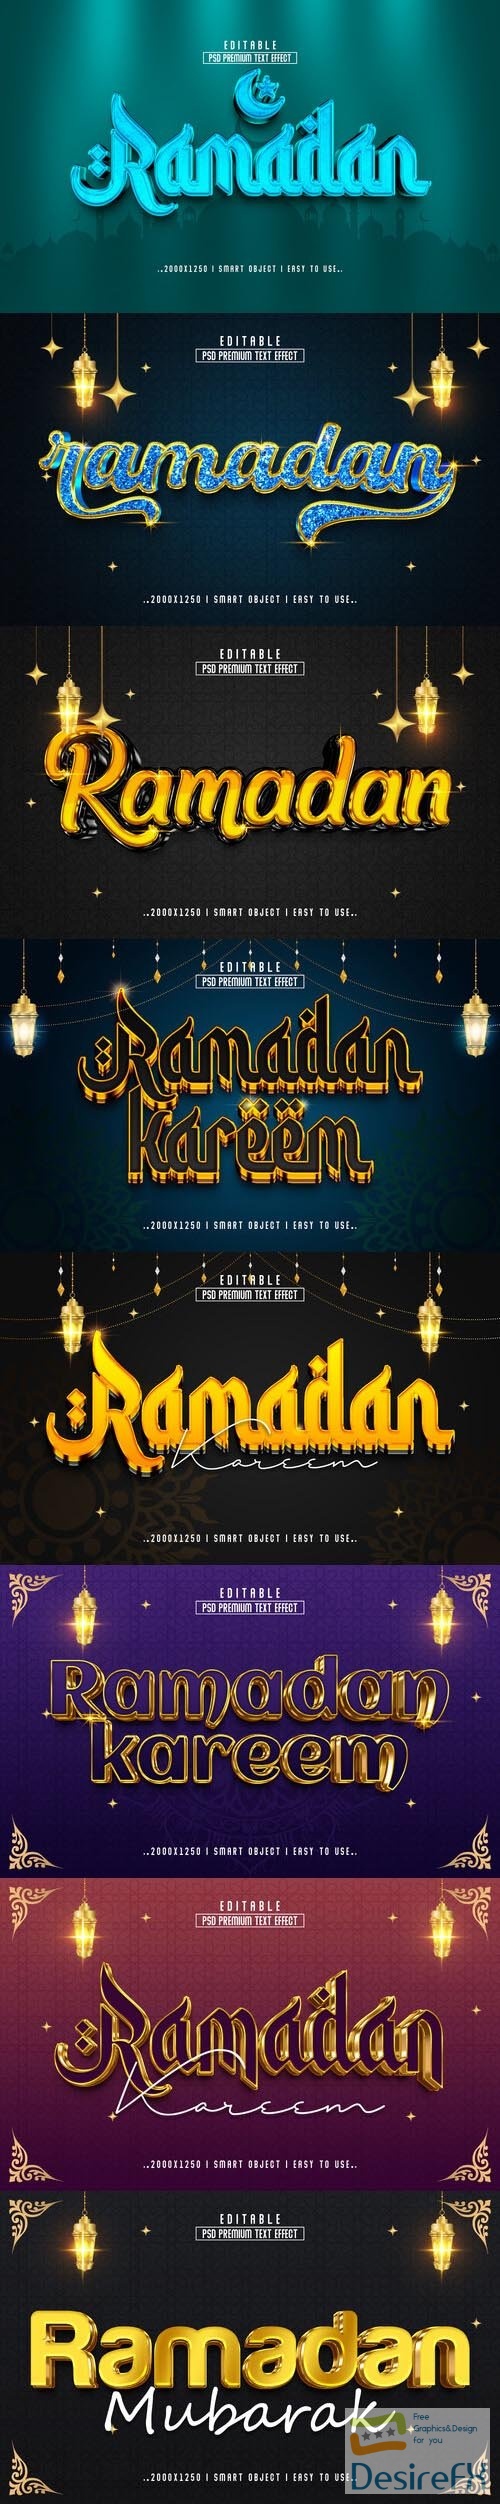 8 Psd Ramadan style text effect editable set vol 2